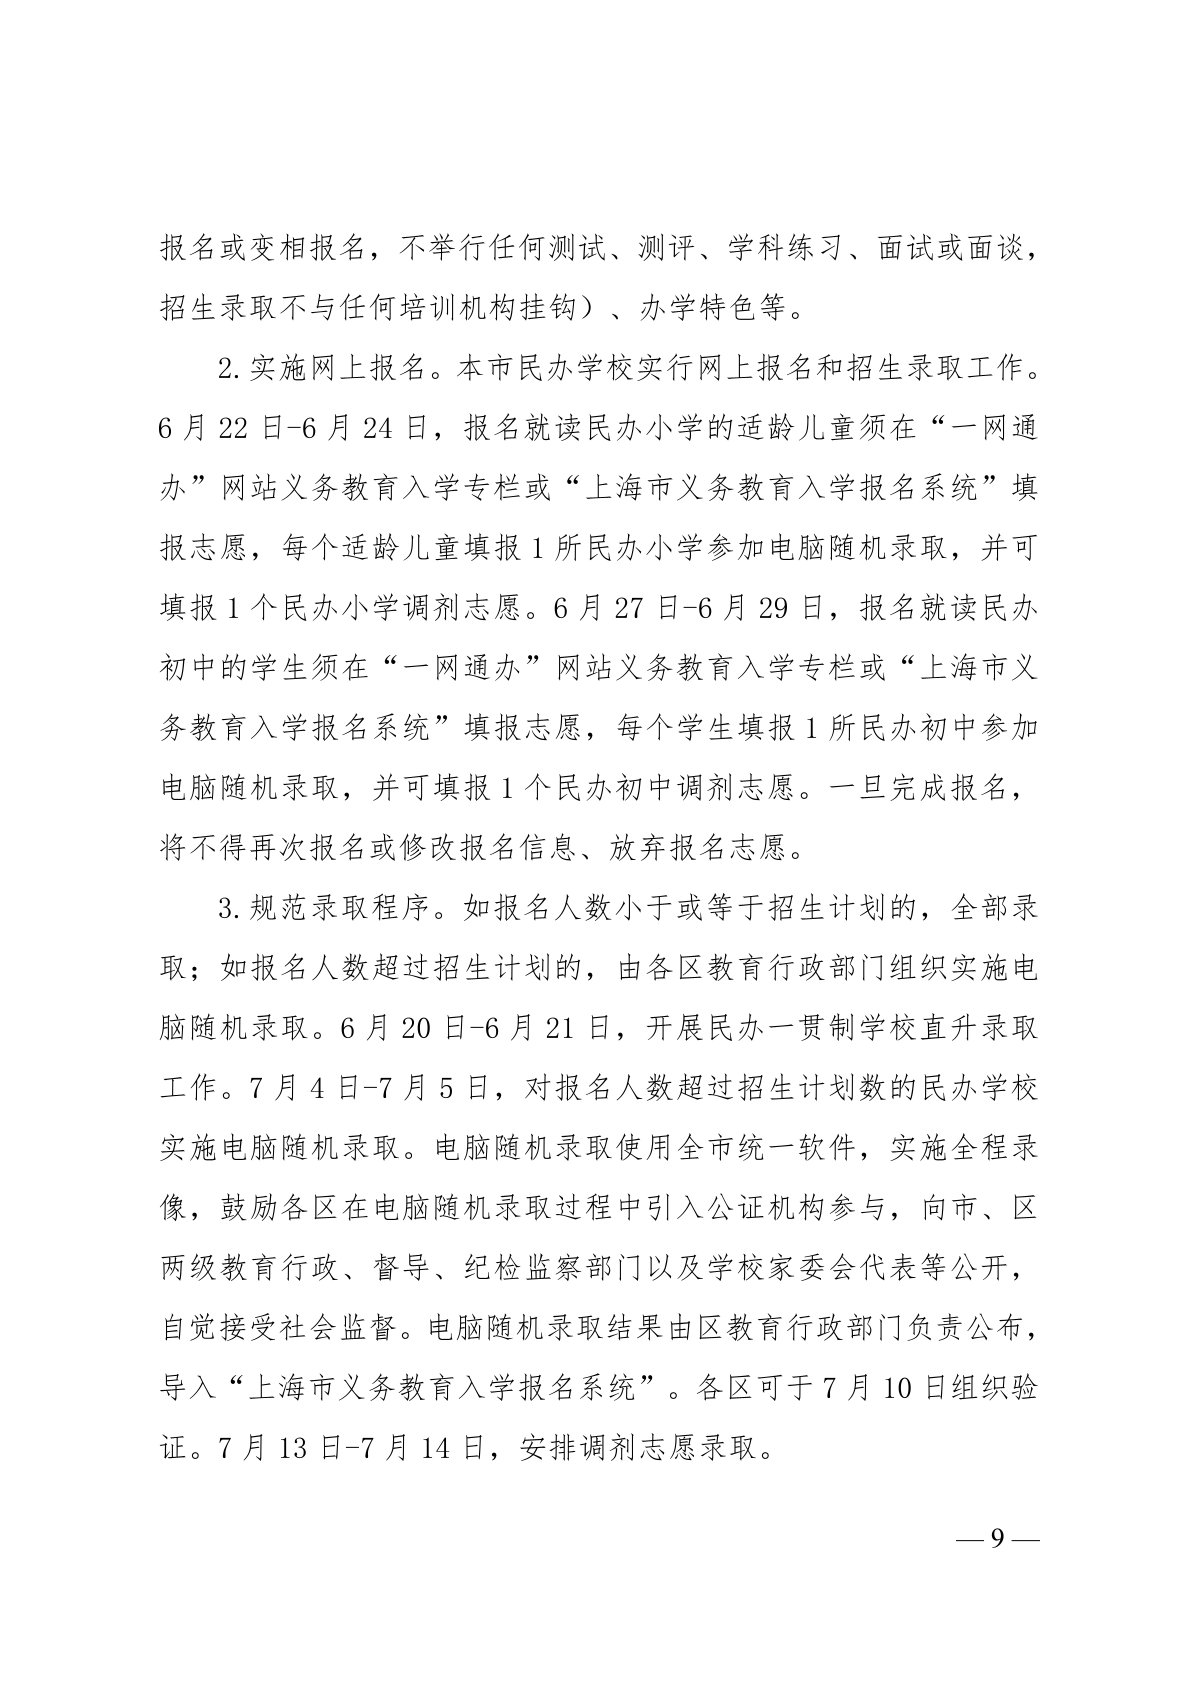 上海市教育委员会关于 2022 年本市义务教育阶段学校招生入学工作的实施意见（沪教委基【2022】11号）